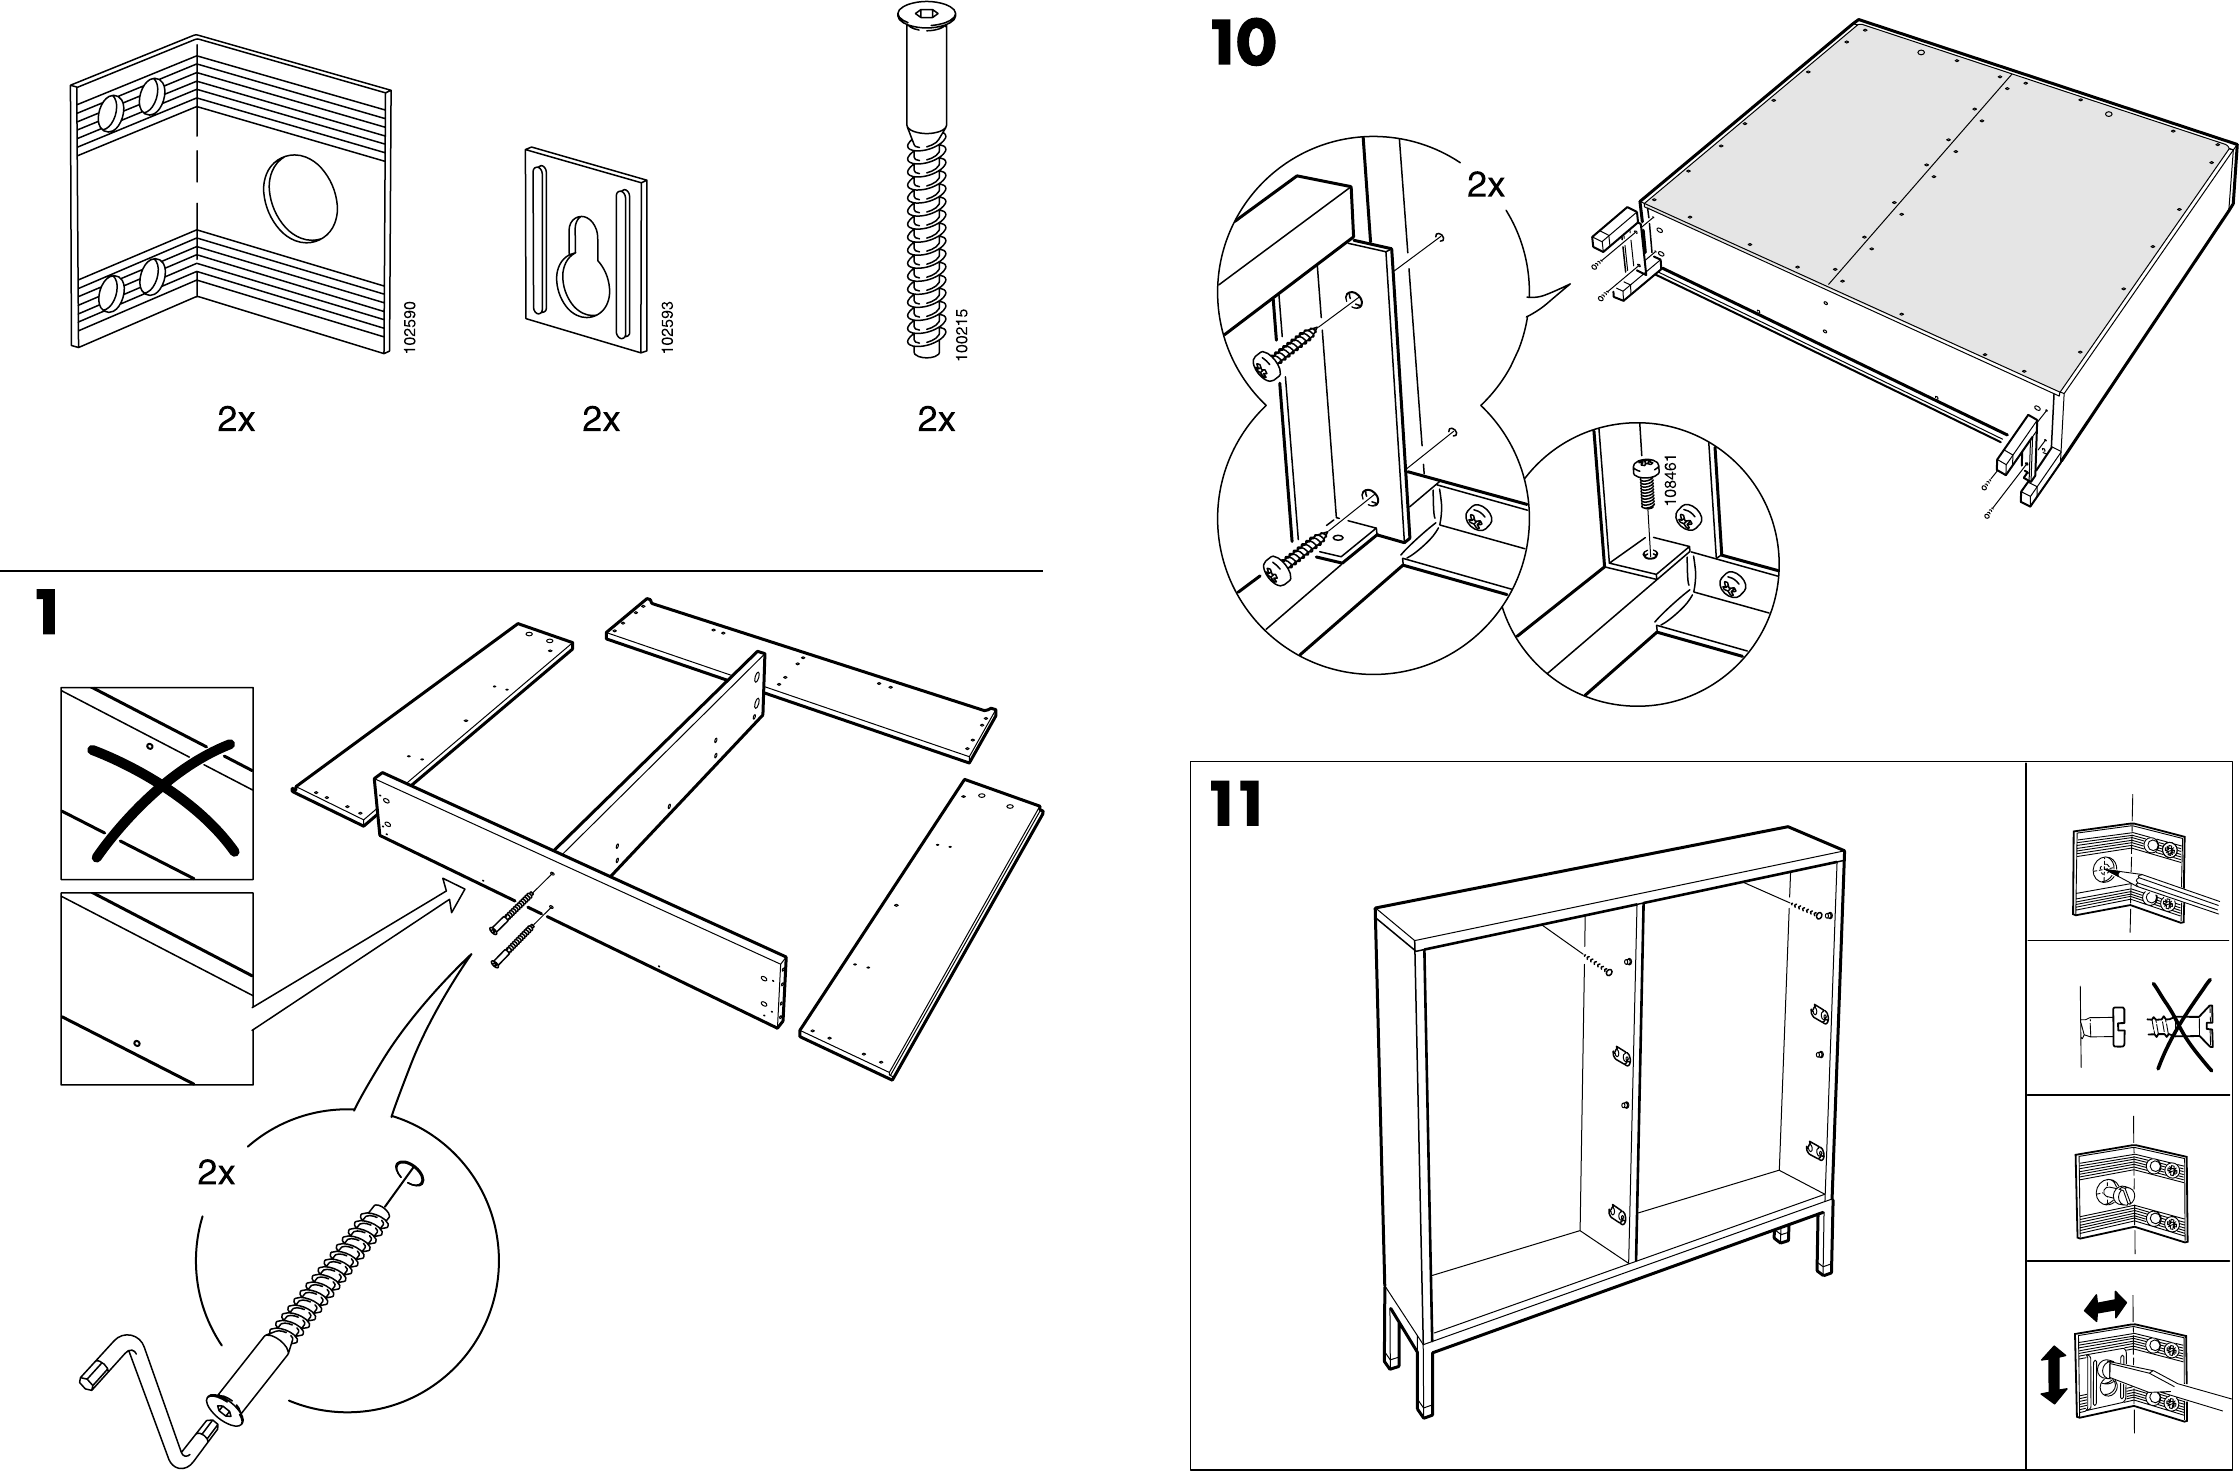 Стол икеа сборка. Ikea hemnes кровать схема сборки. Стол микке икеа схема. Схема сборки стола икеа Micke. Шкаф hemnes схема сборки.